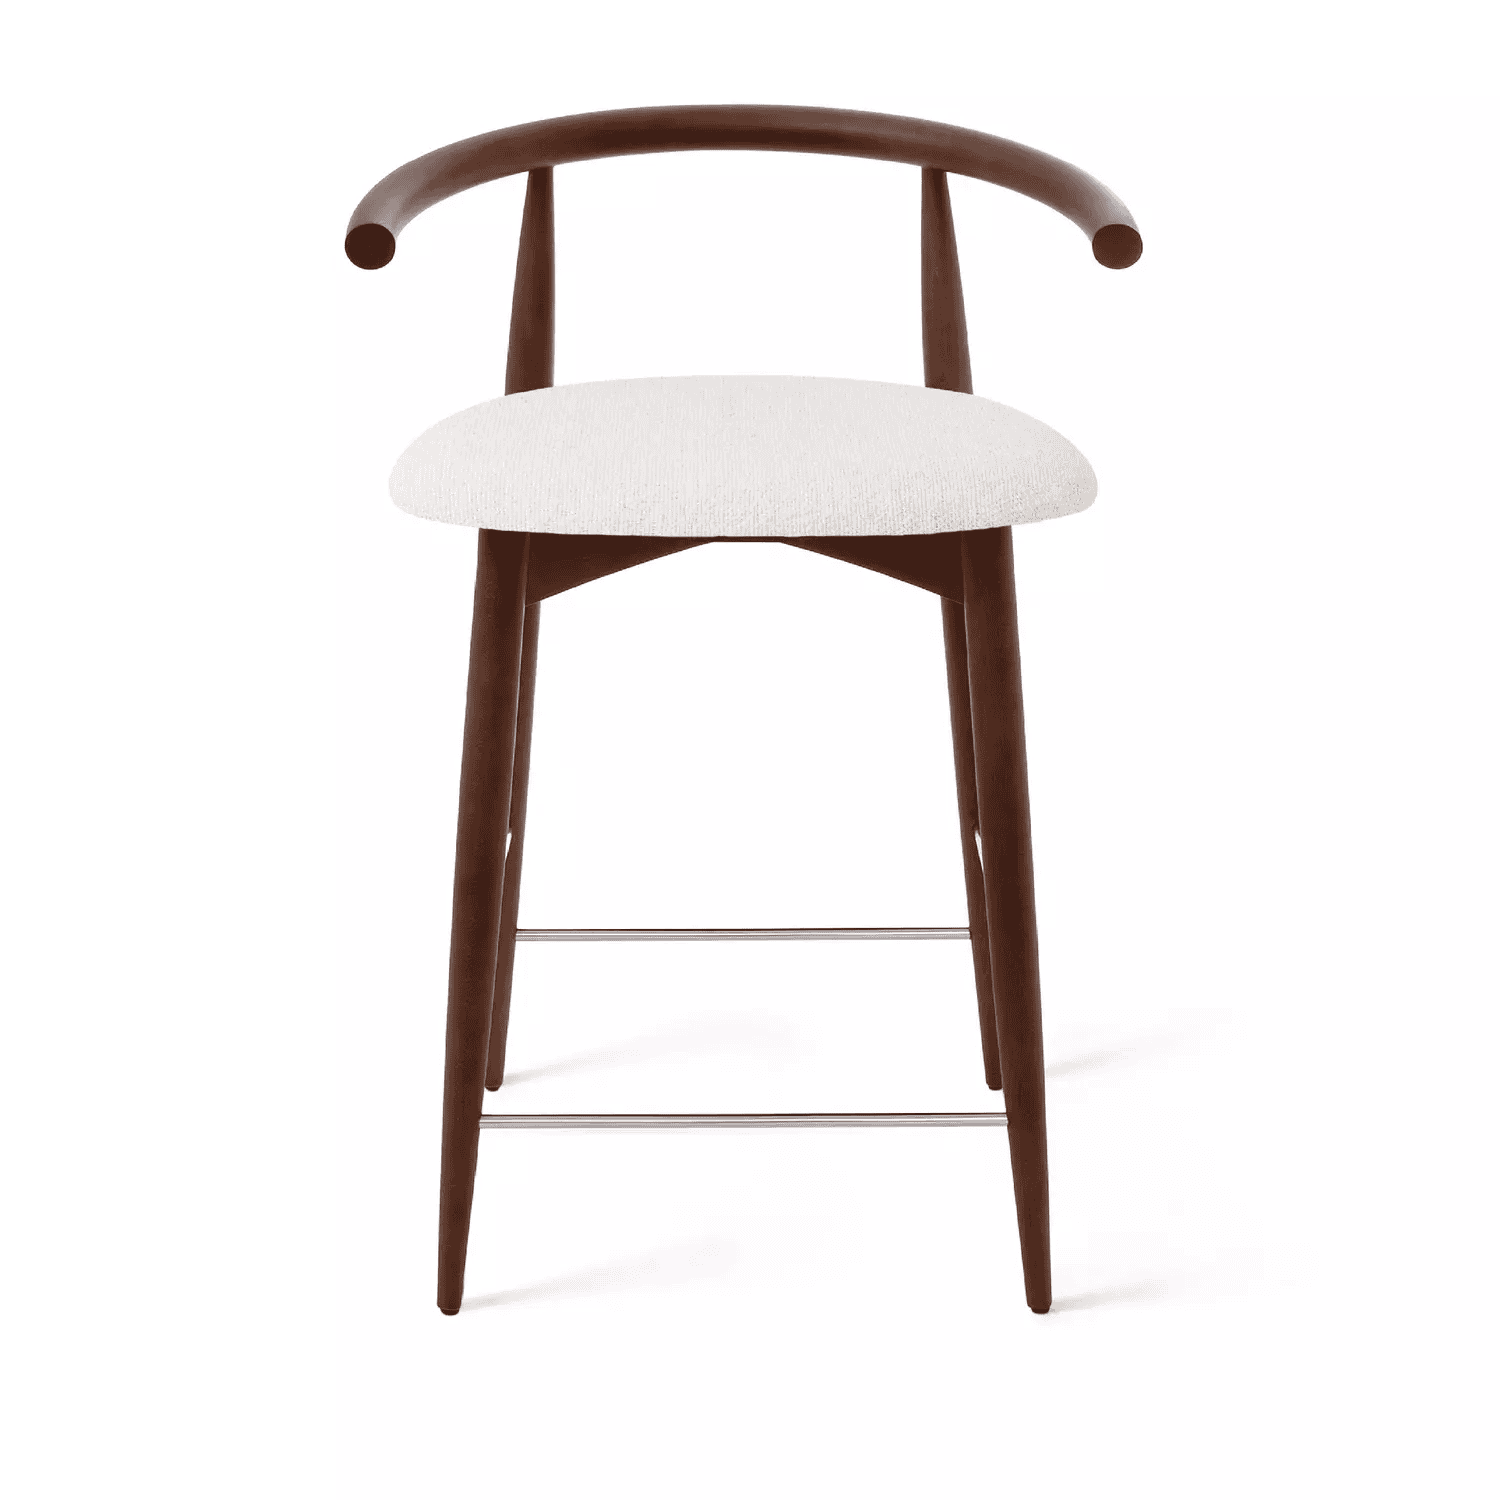 Полубарный стул Fabricius, натуральный бук, тонированный коричневым лаком, шенилл белый - изображение 1